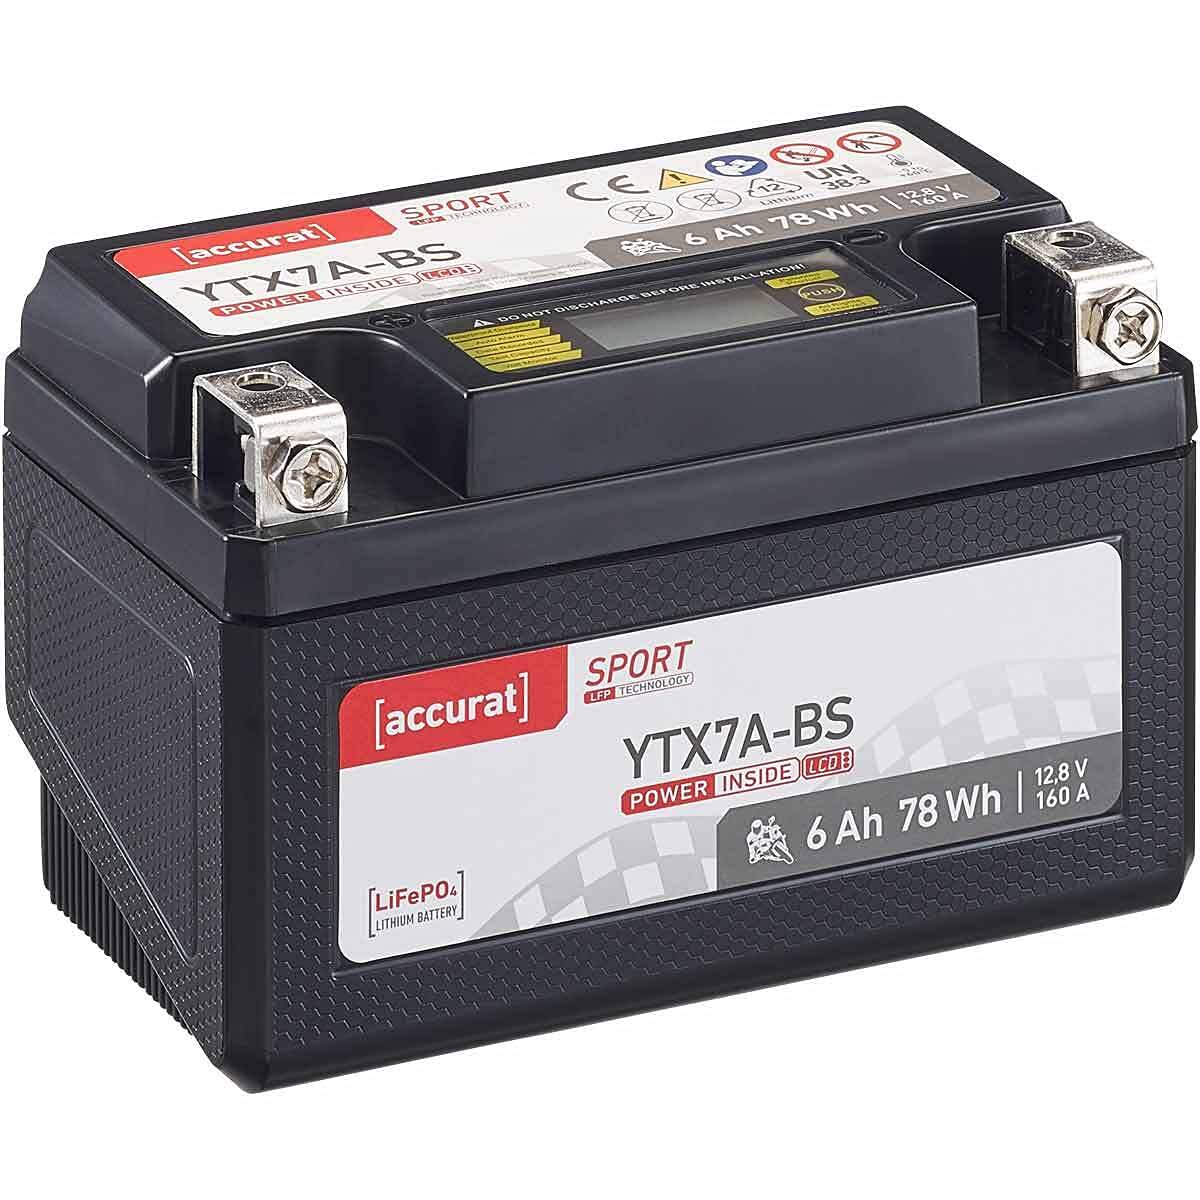 Accurat Motorradbatterie YTX7A-BS - 12V, 6Ah, 160A, vorgeladen, wartungsfrei, LCD Display - Starterbatterie, LiFePO4 Batterie in Erstausrüsterqualität für Rasentraktor, Roller, Motorrad, Quad von Accurat